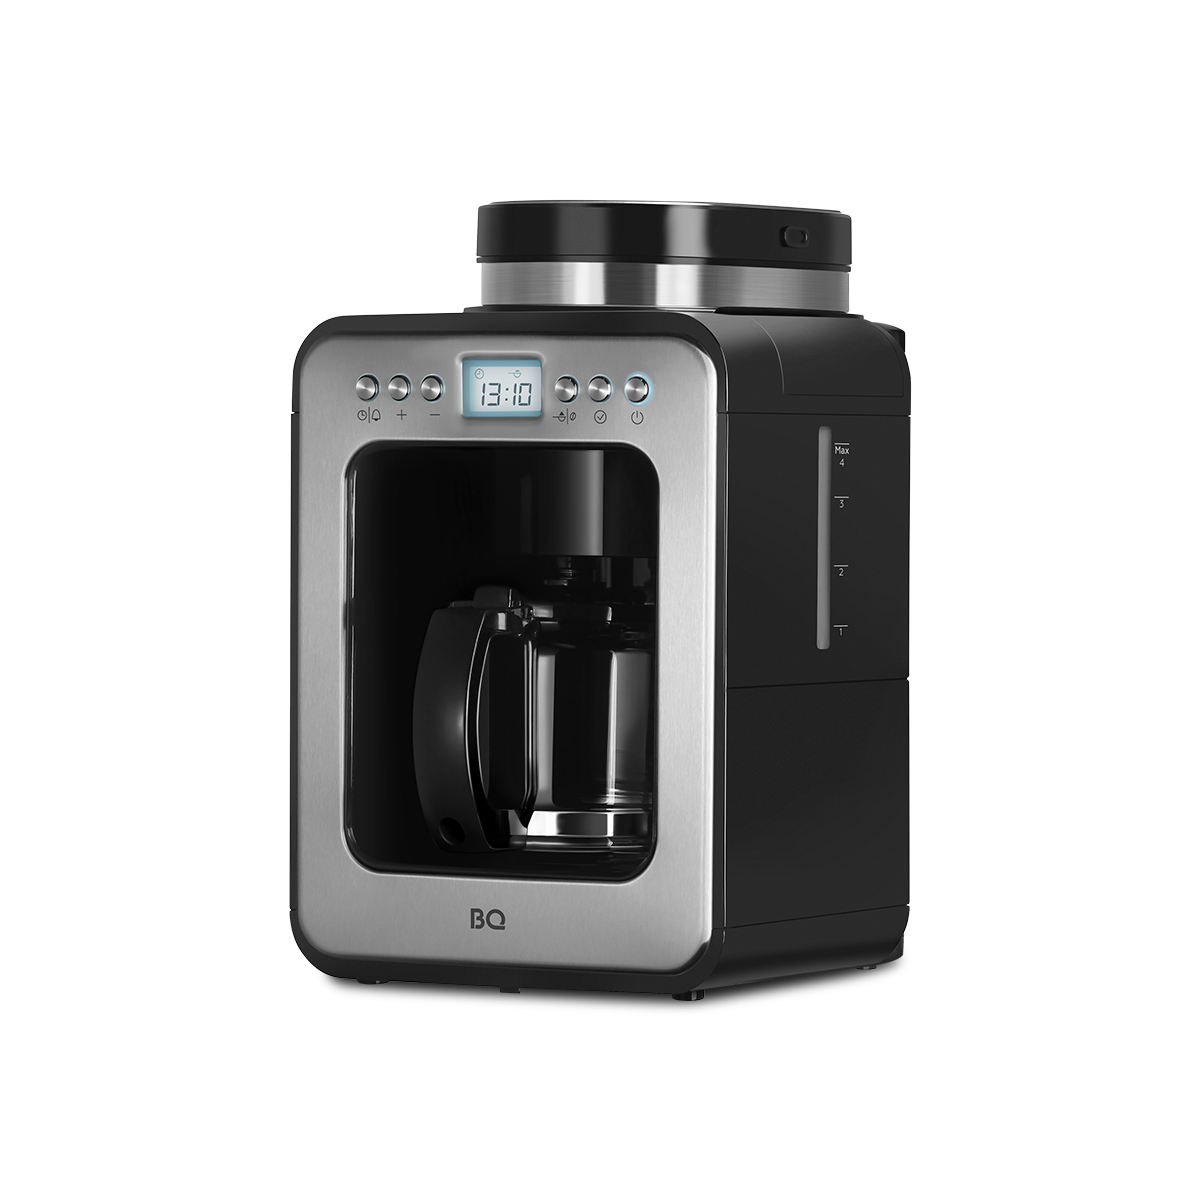 Кофеварка капельного типа BQ CM7001 серебристый, черный капельная кофеварка domfy dsm cm301 серебристый